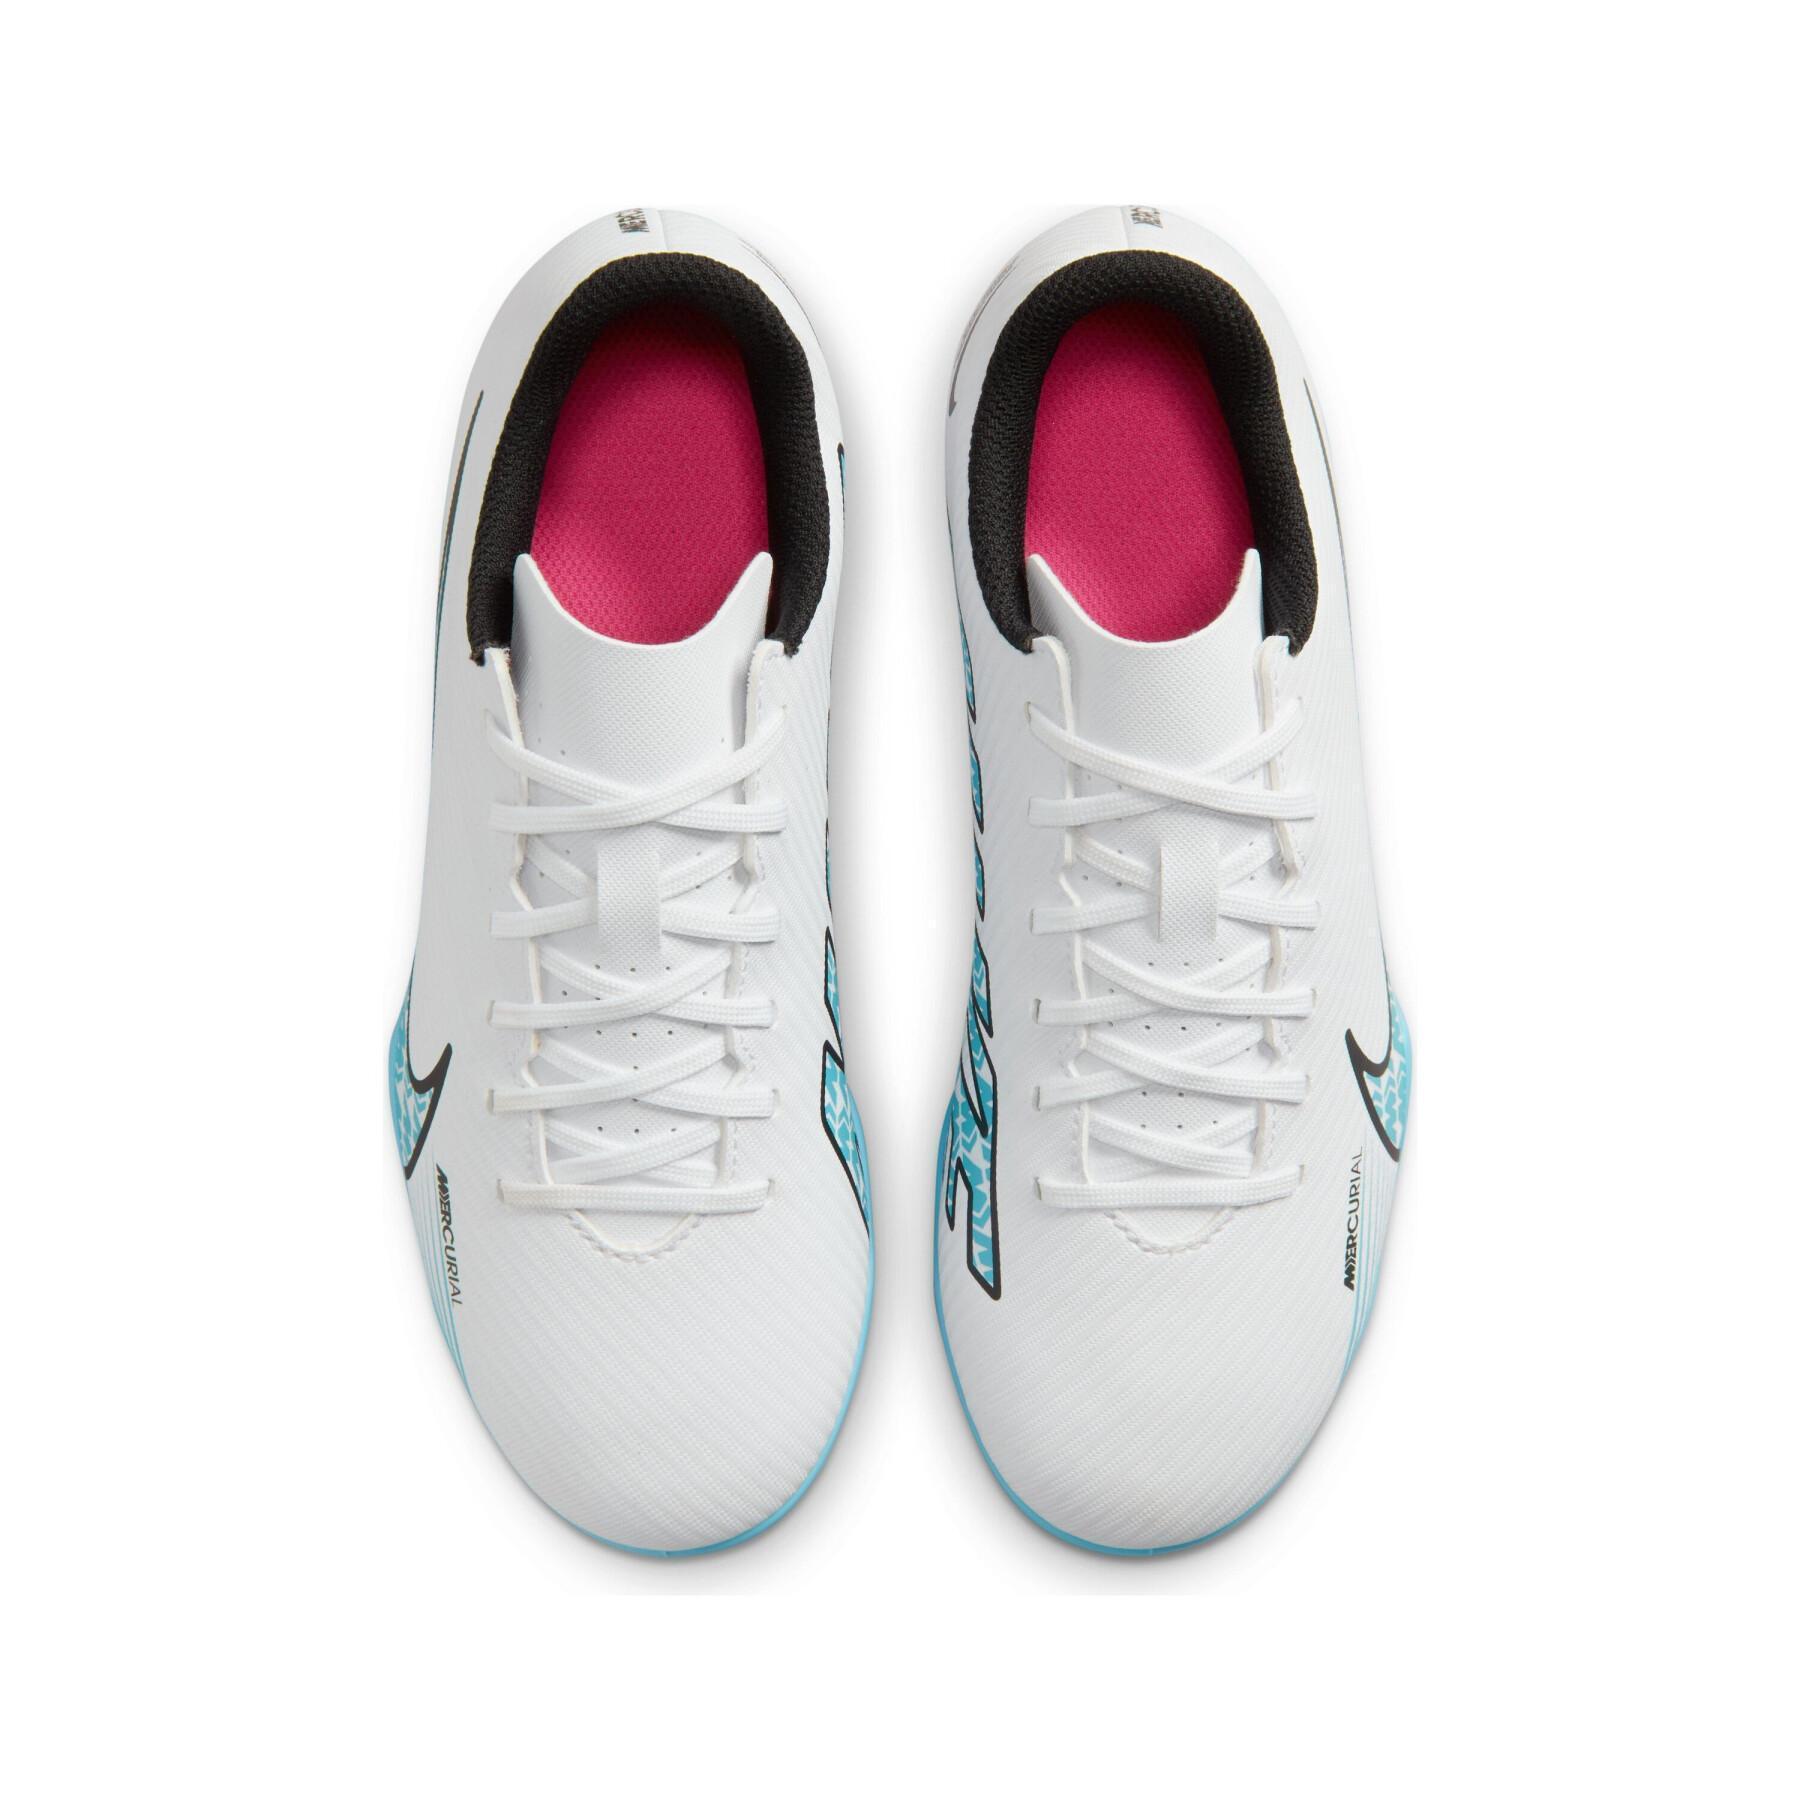 Dziecięce buty piłkarskie Nike Mercurial Vapor 15 Club FG/MG - Blast Pack